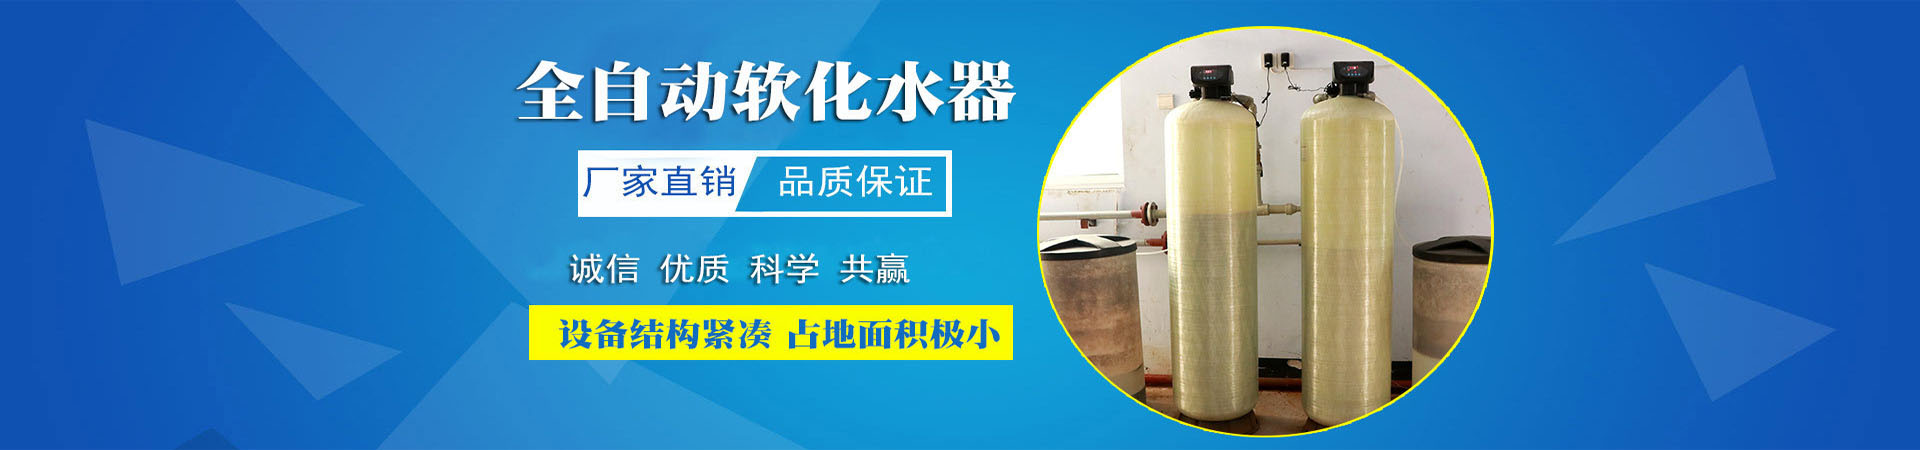 凝结水回收装置、重庆本地凝结水回收装置、重庆、重庆凝结水回收装置